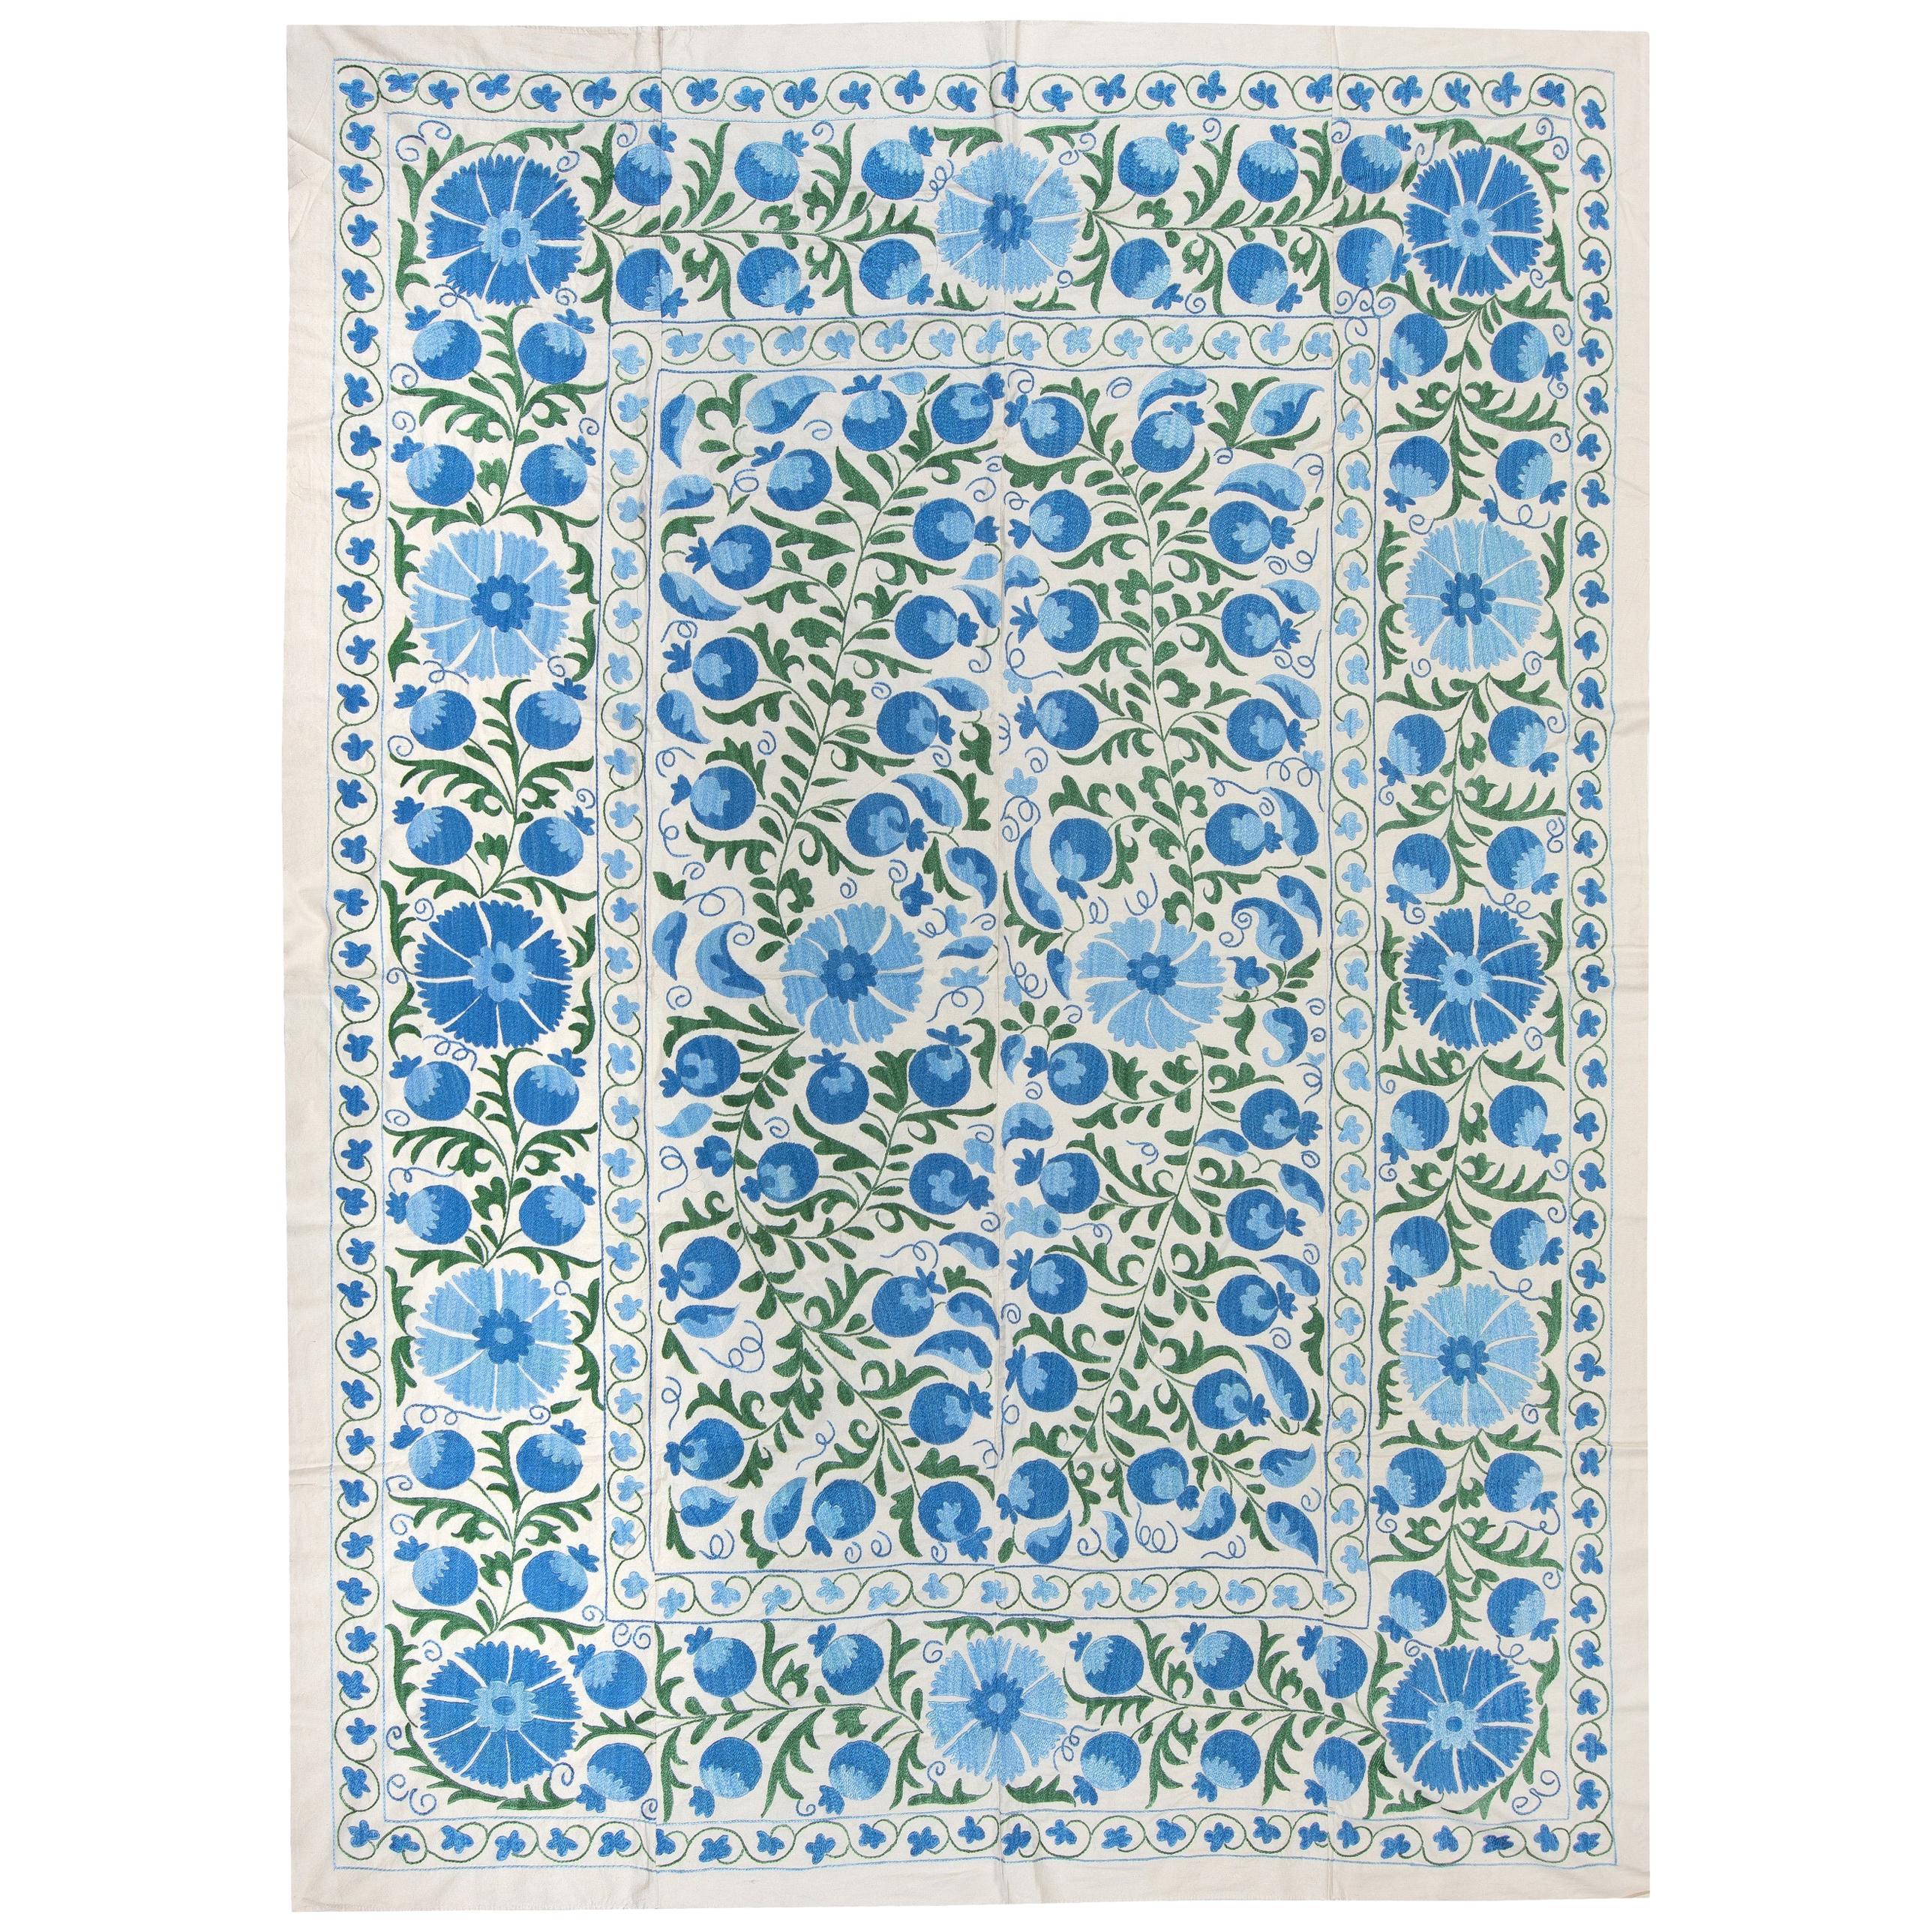 6.4x8.3 Ft Tapis de lit en broderie de soie, tenture murale Suzani, tapisserie ouzbek bleue en vente